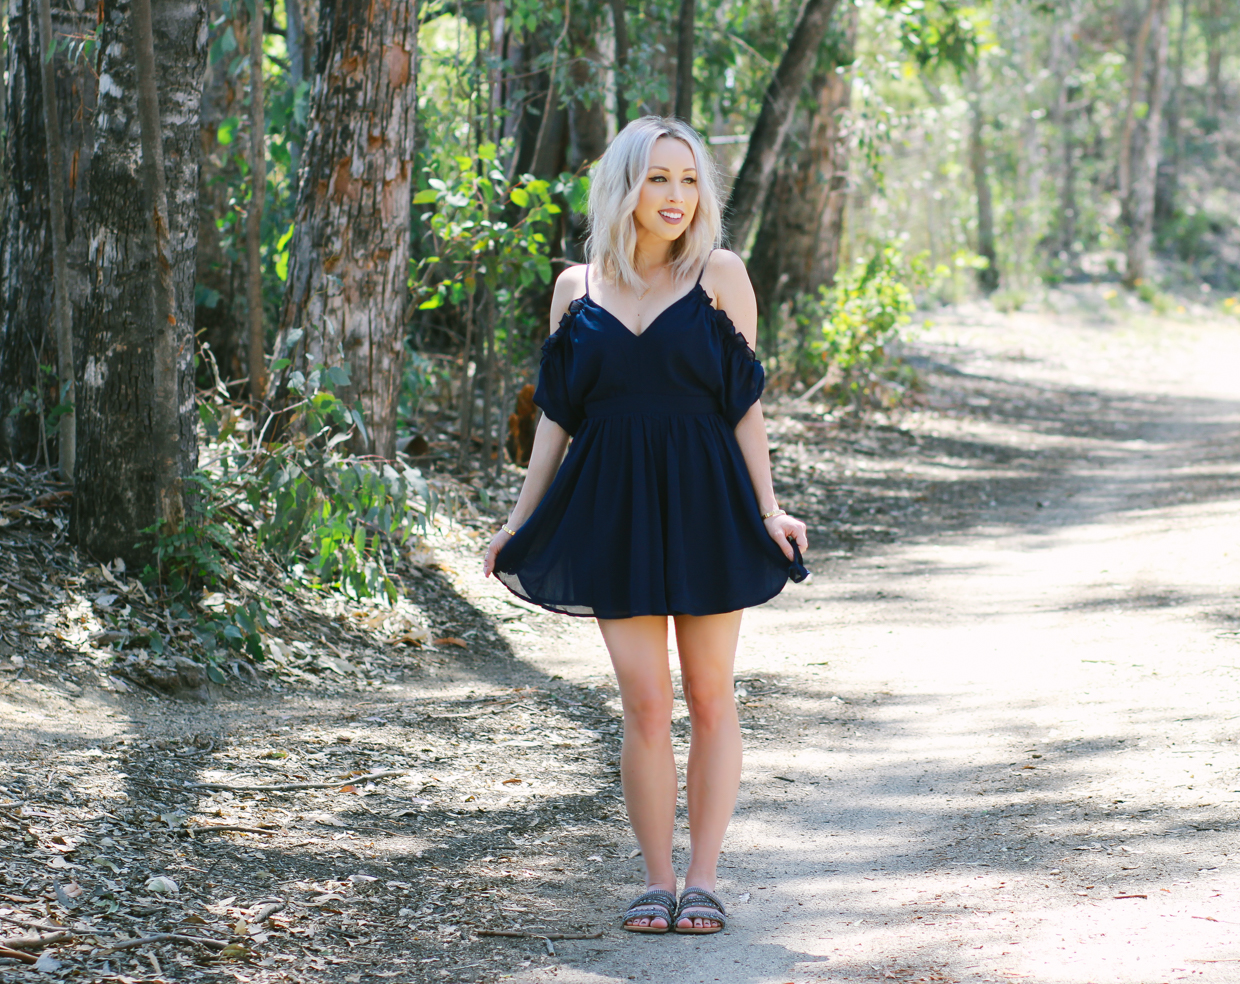 Blondie in the City | Navy Blue Chiffon Dress, Cutout Ruffle Shoulders @shoptobi